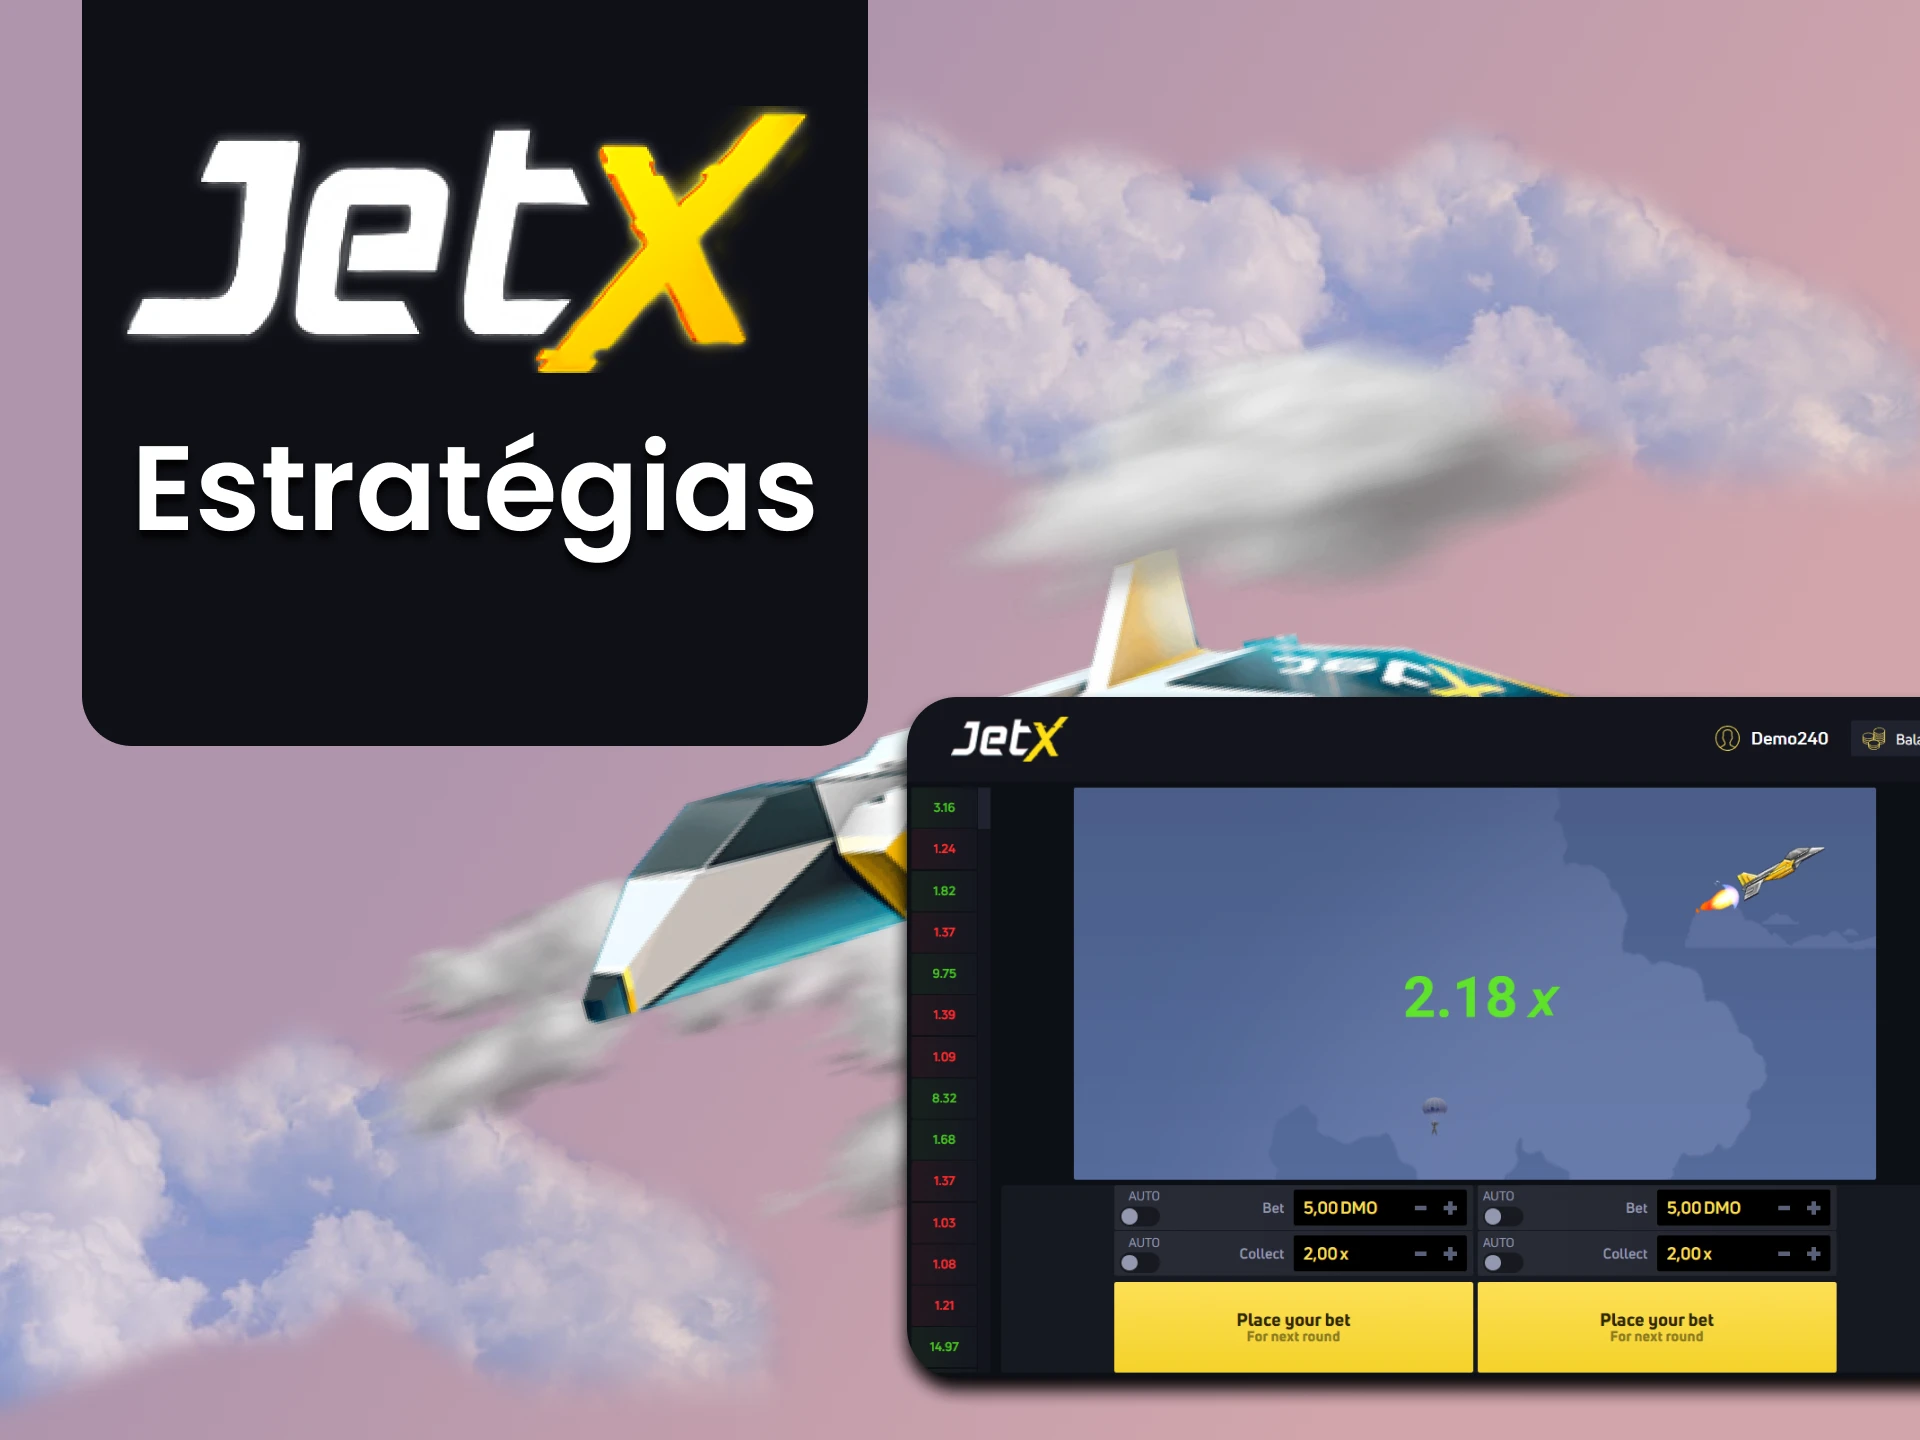 Escolha uma estratégia vencedora para vencer no JetX.